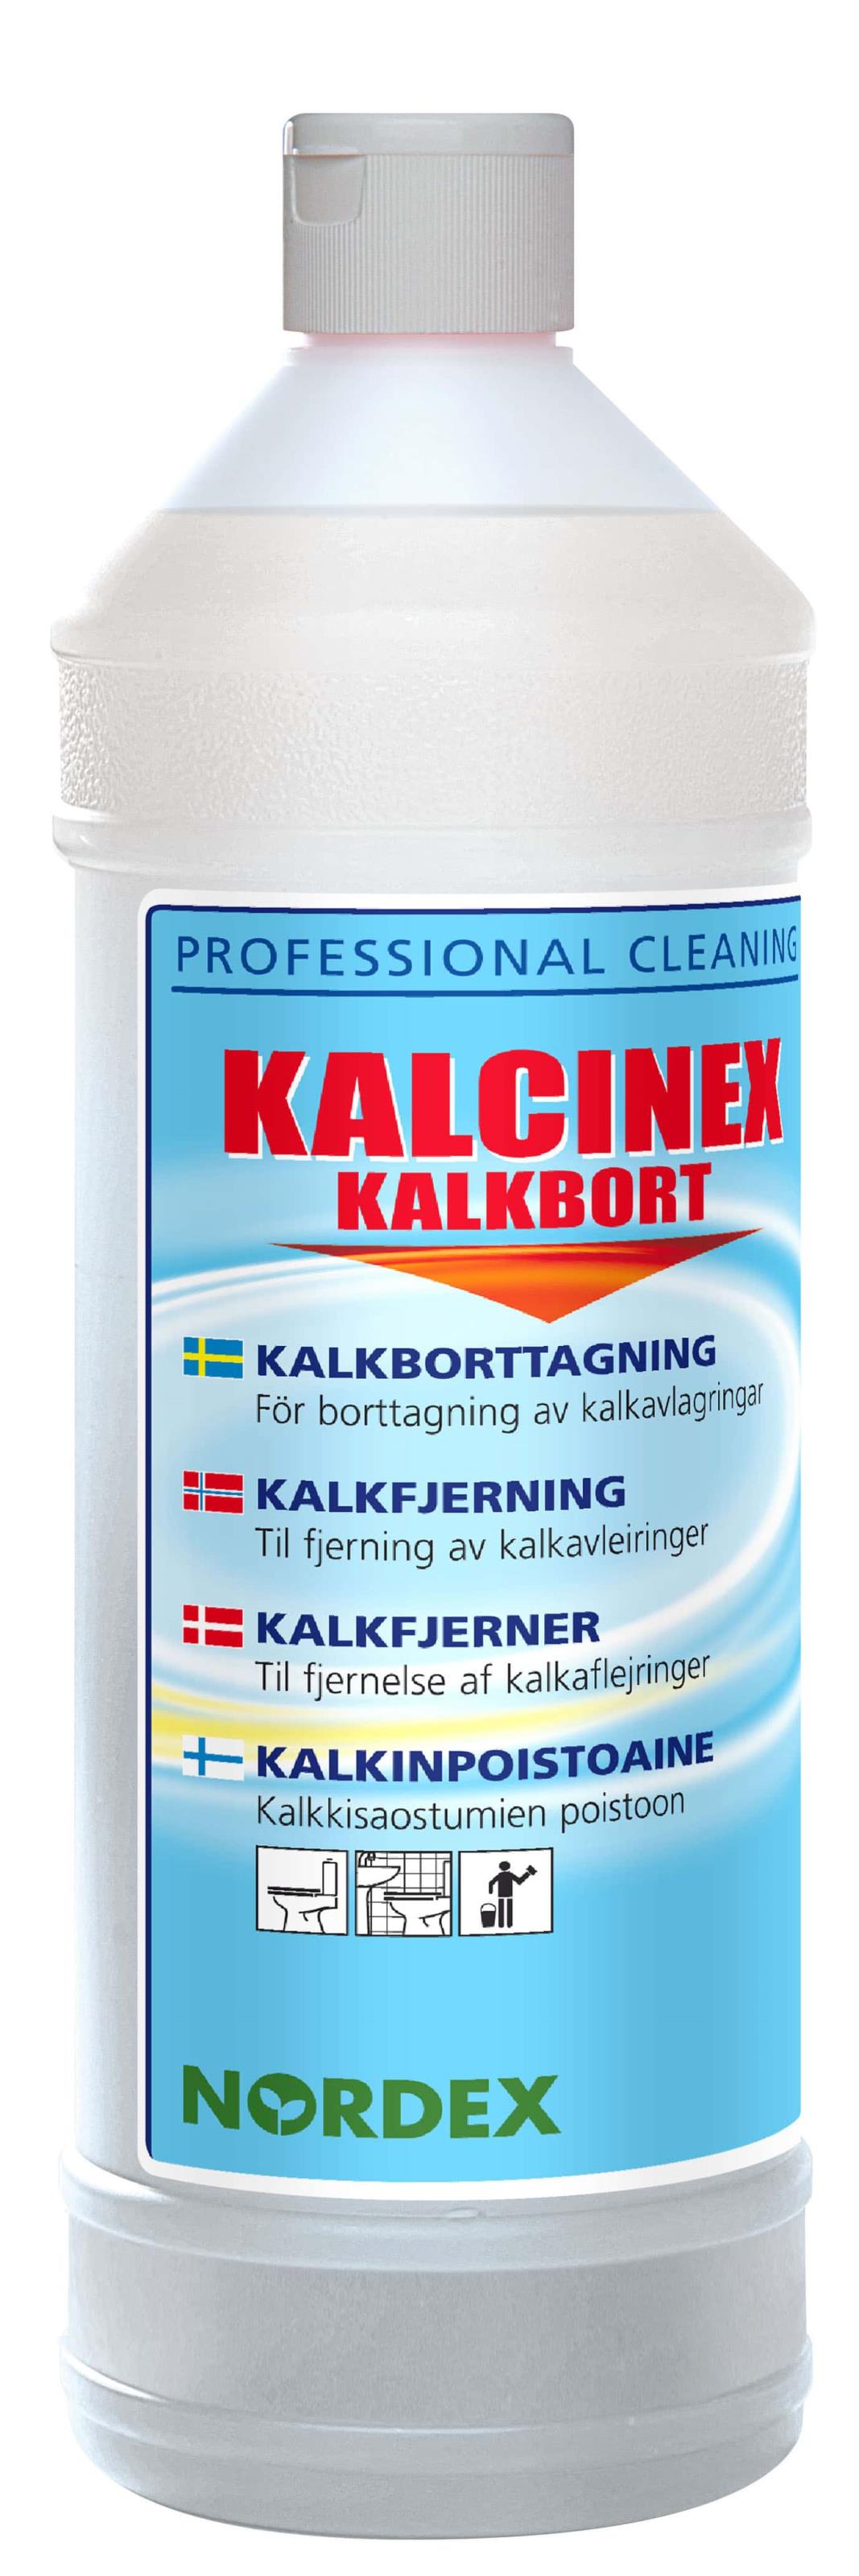 Kalkbort Nordex Kalcinex 1L 52070062